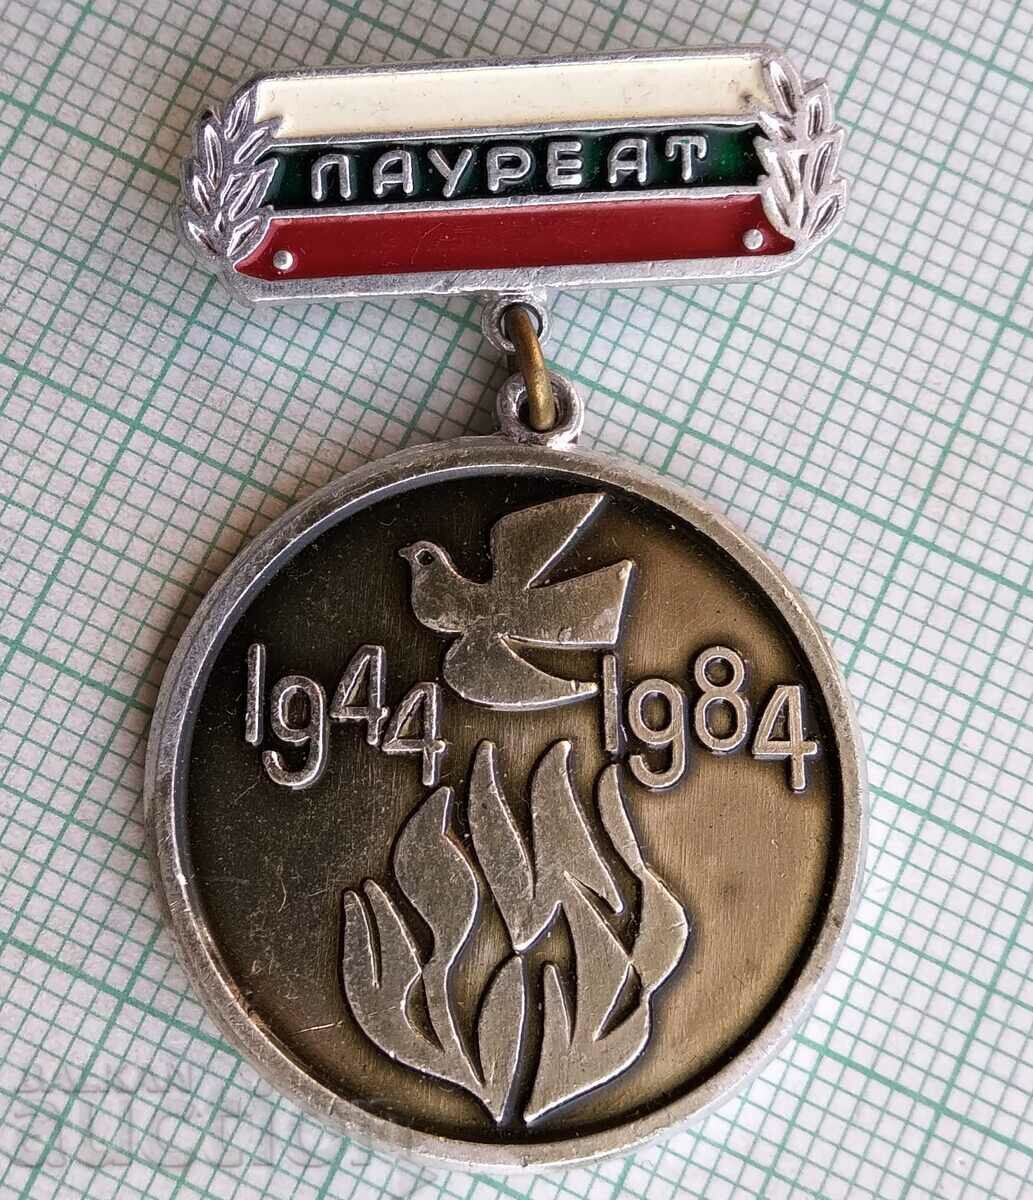 11545 Insigna - Laureat 1944-1984